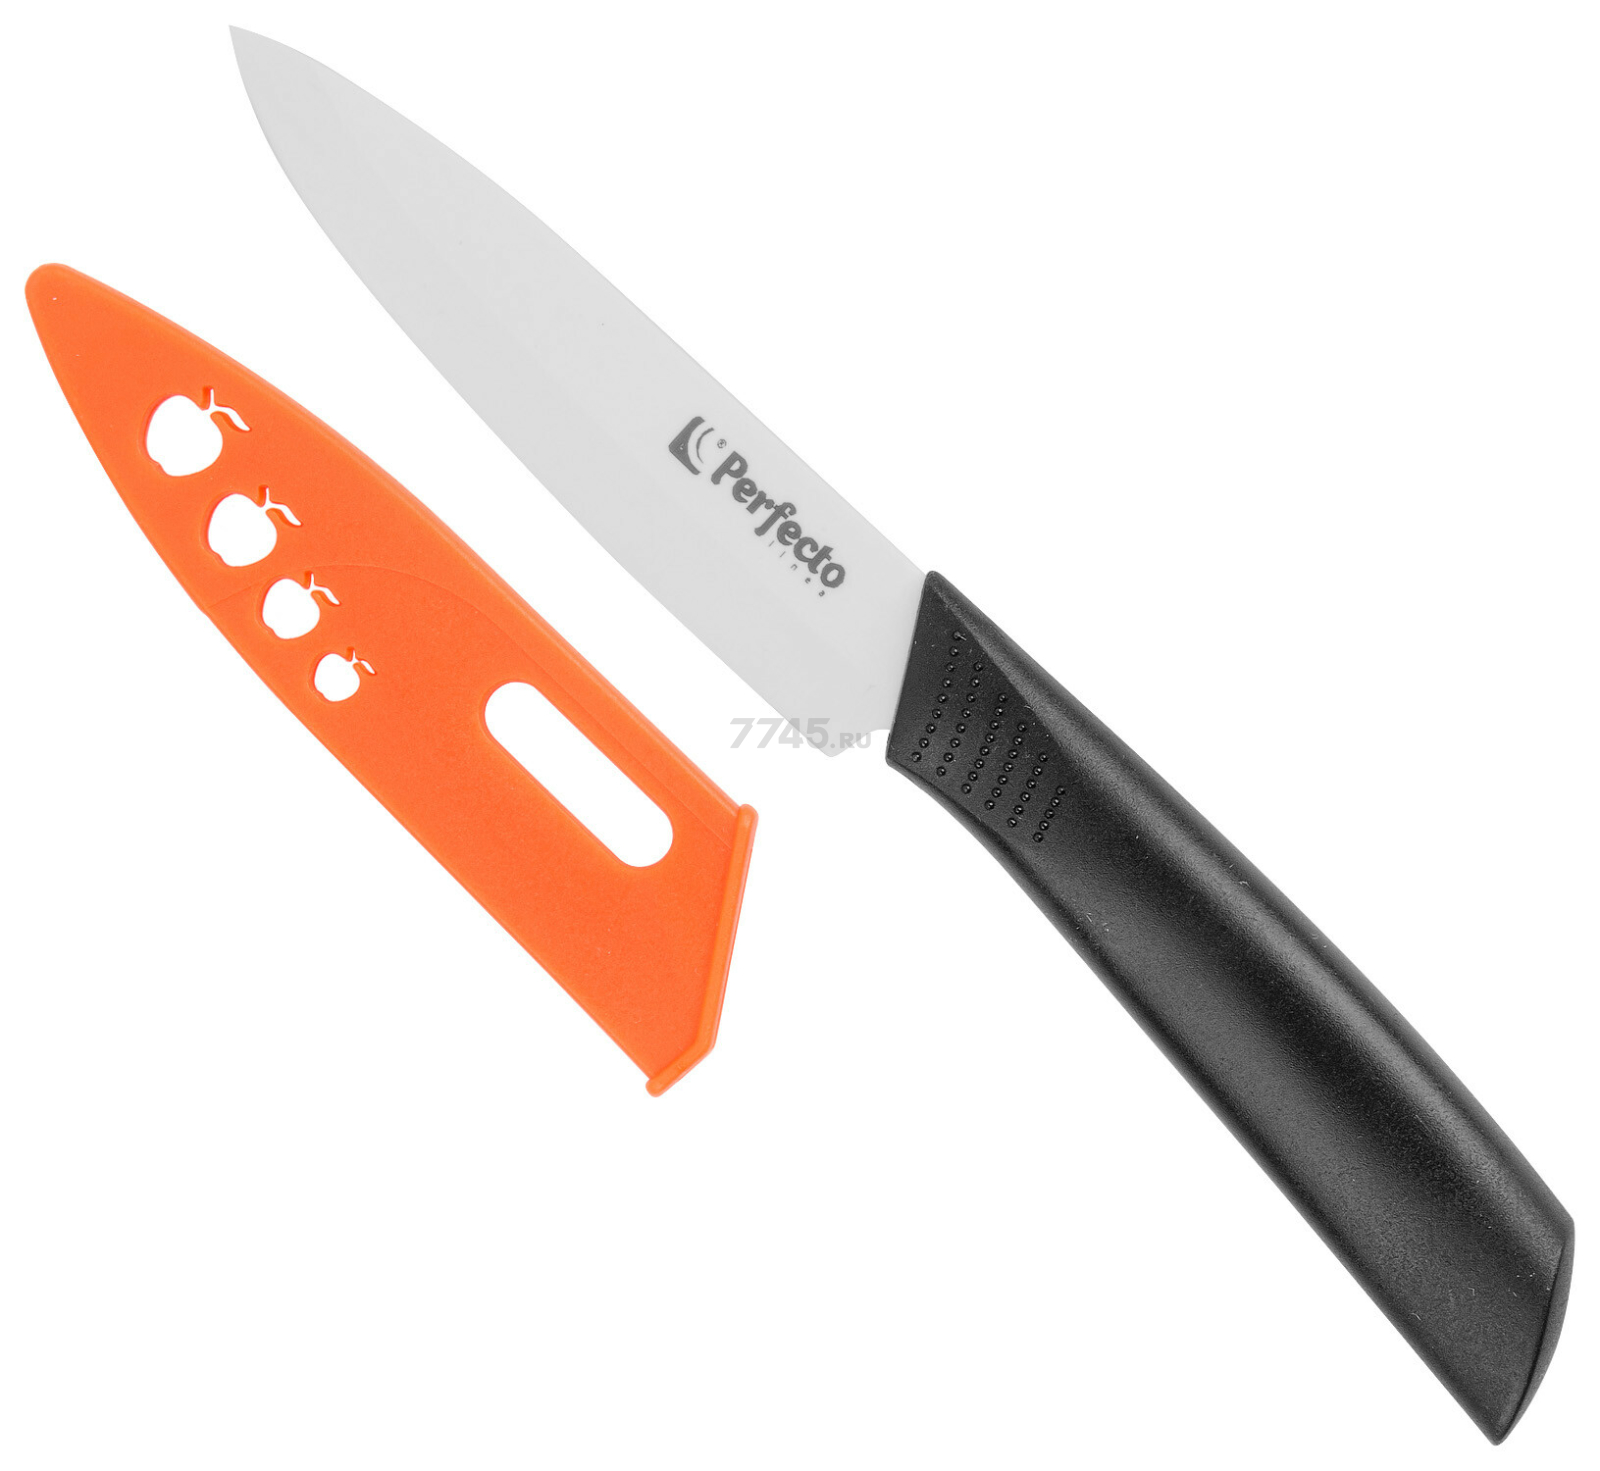 Нож кухонный PERFECTO LINEA Handy (21-493524)